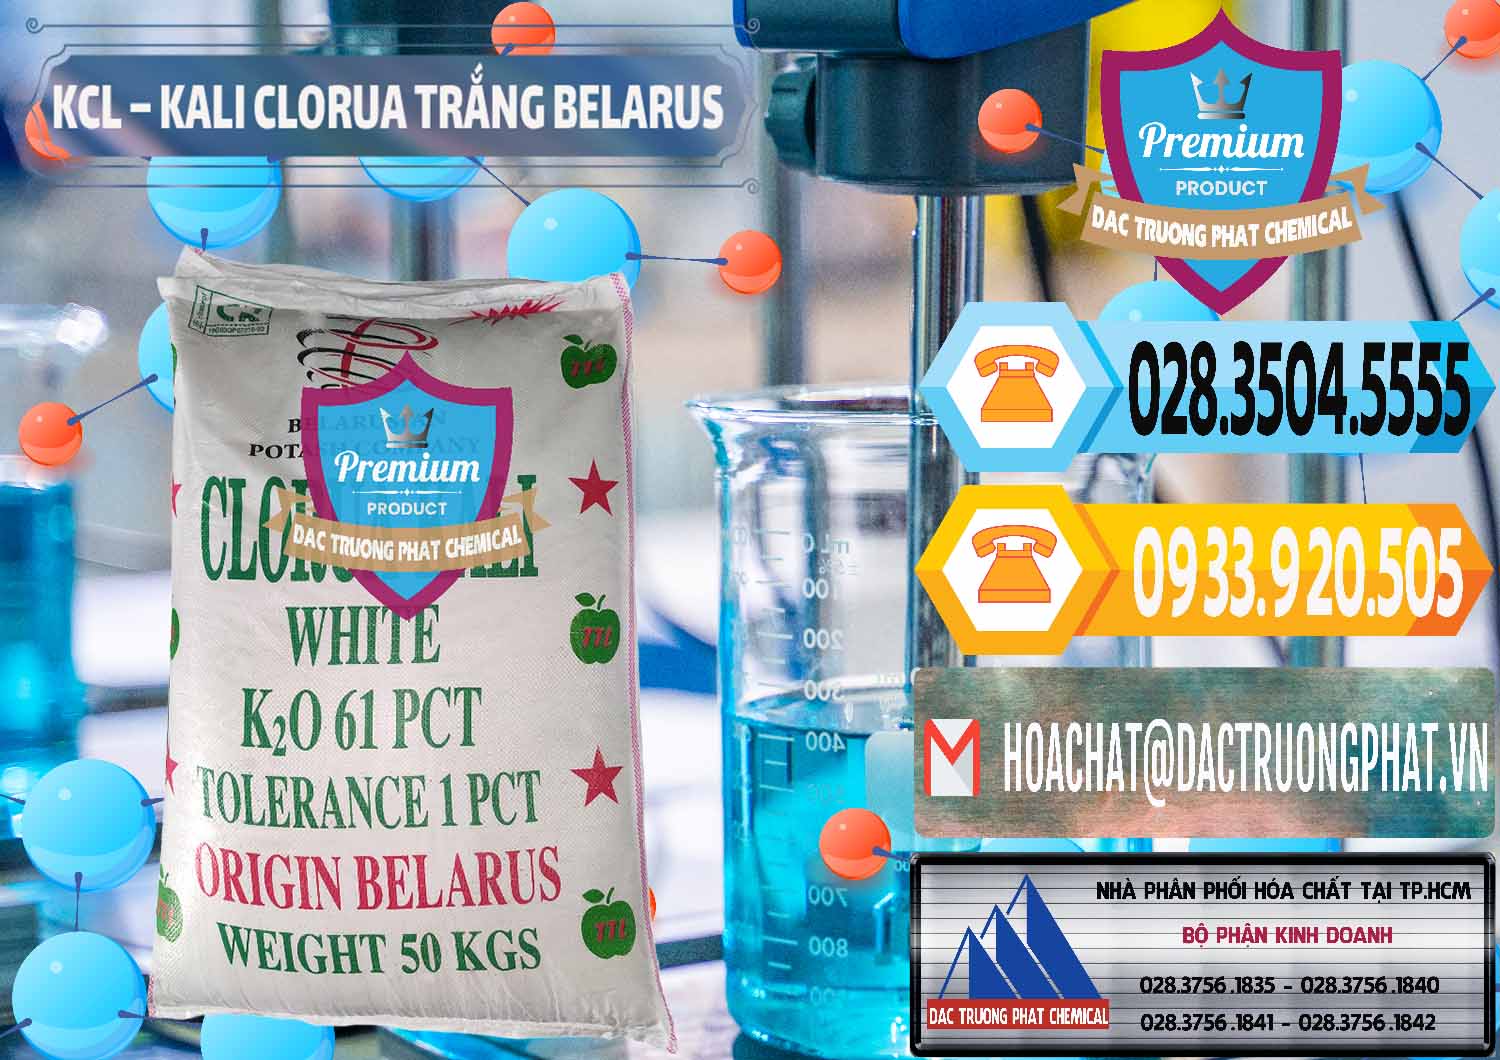 Nơi cung cấp - bán KCL – Kali Clorua Trắng Belarus - 0085 - Nơi cung cấp ( bán ) hóa chất tại TP.HCM - hoachattayrua.net